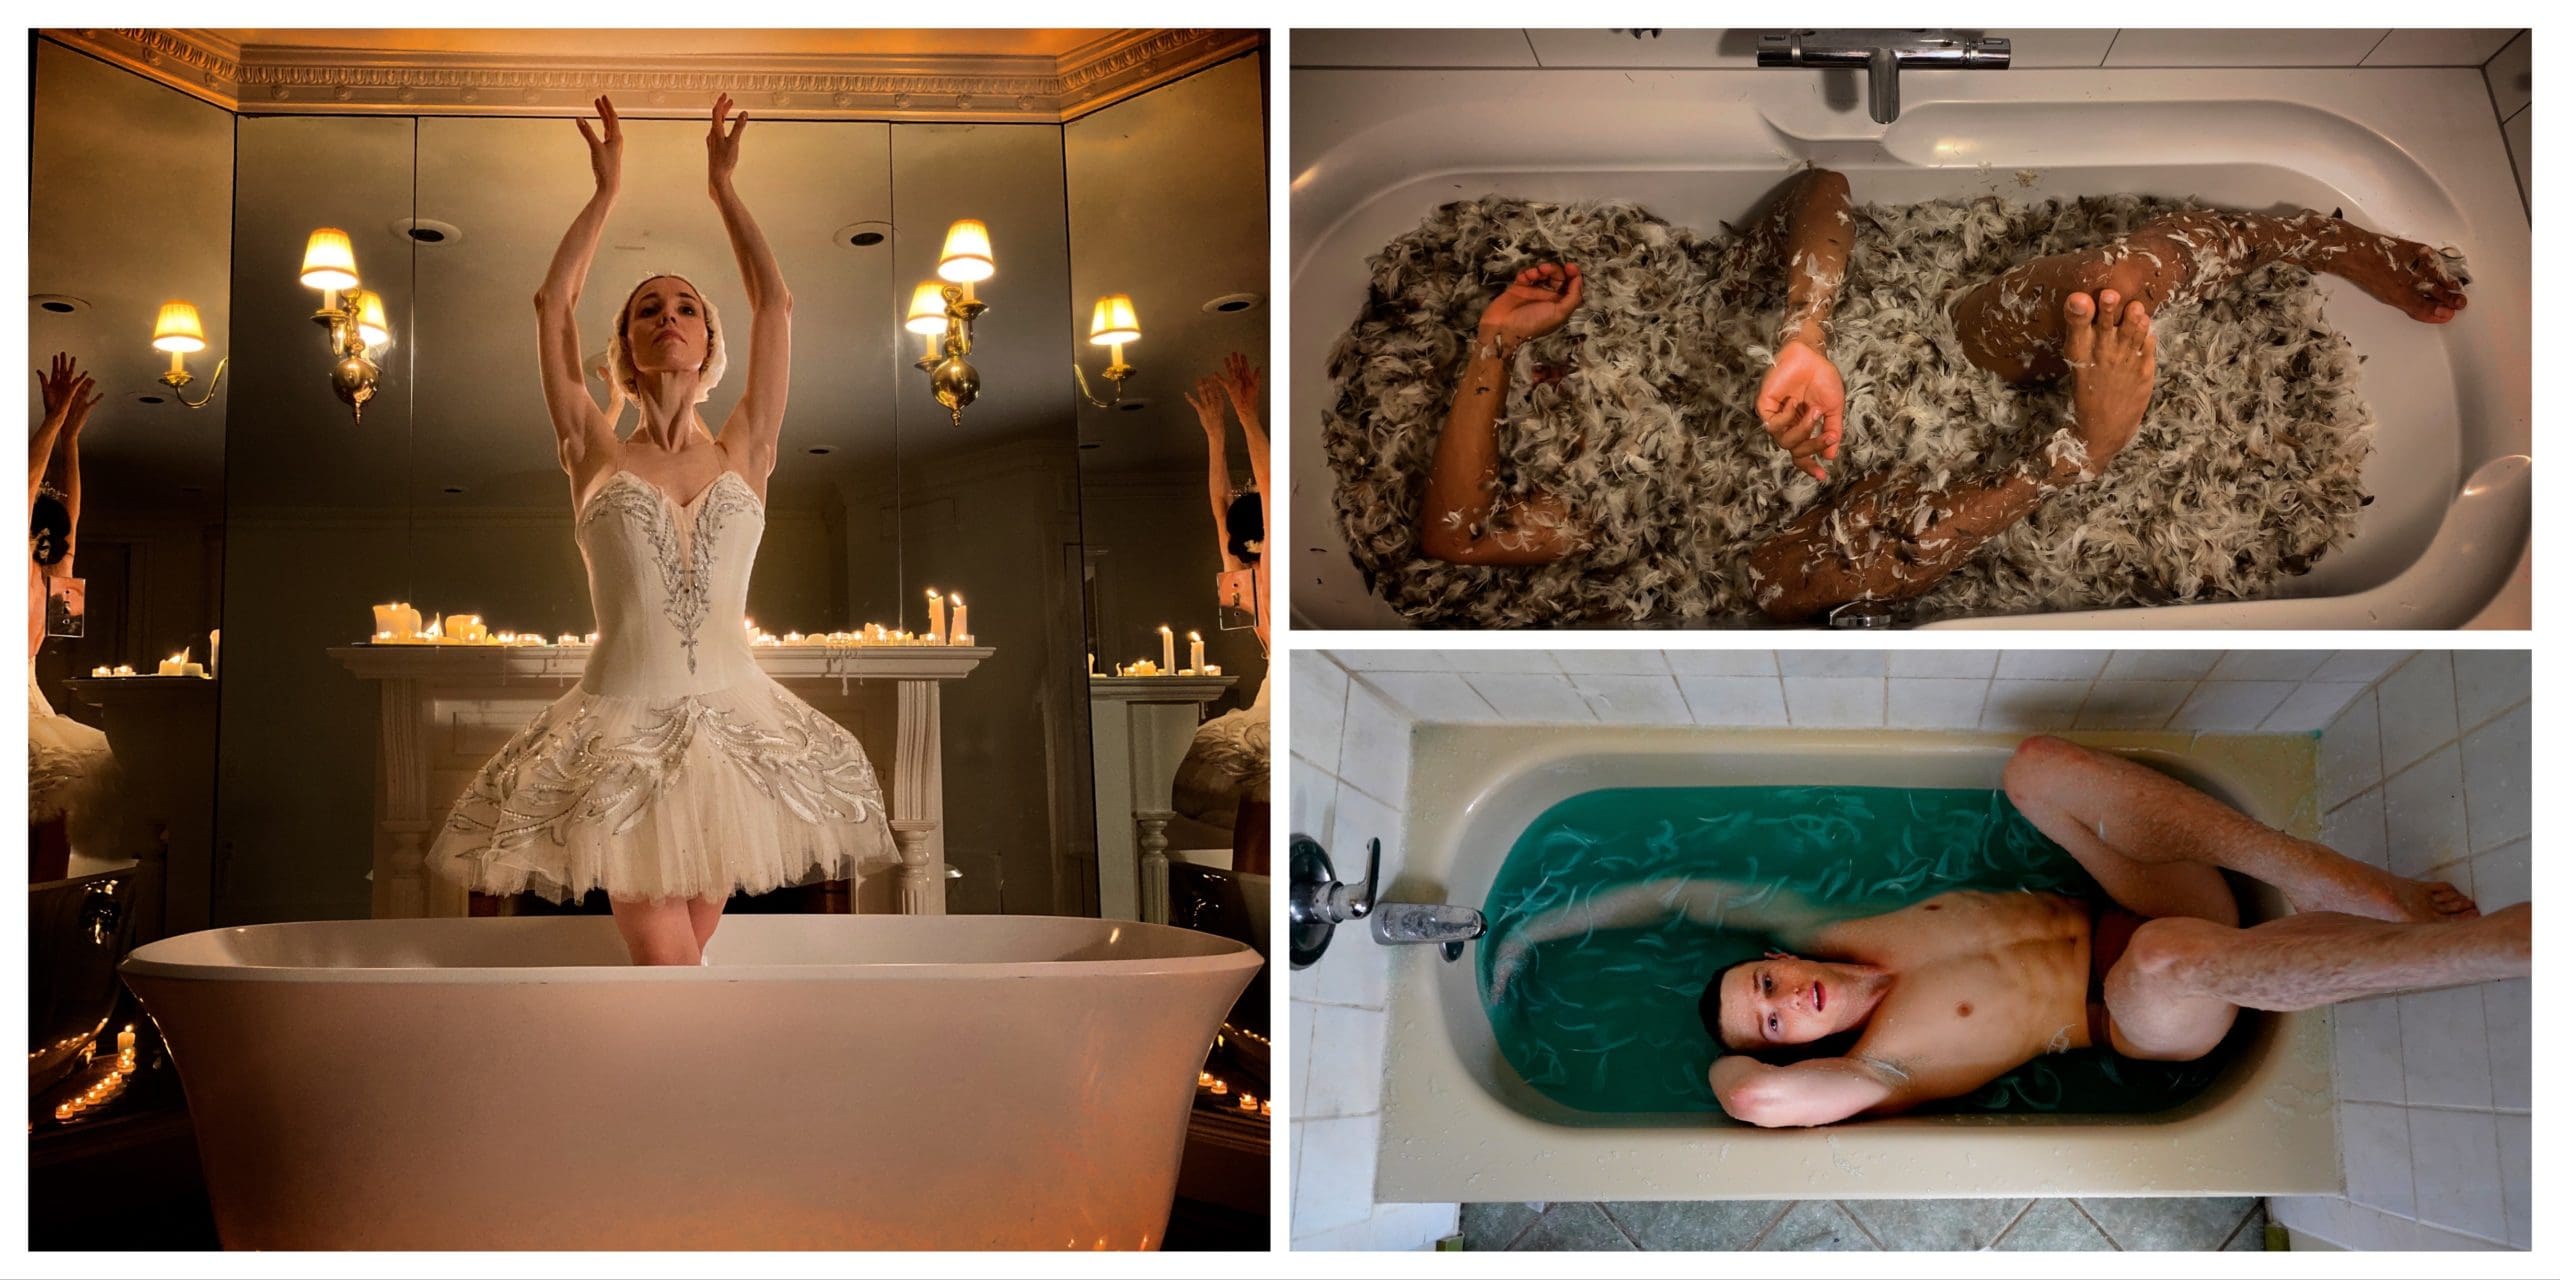 NEWS: Elite ballet dancers perform Swan Lake in their baths